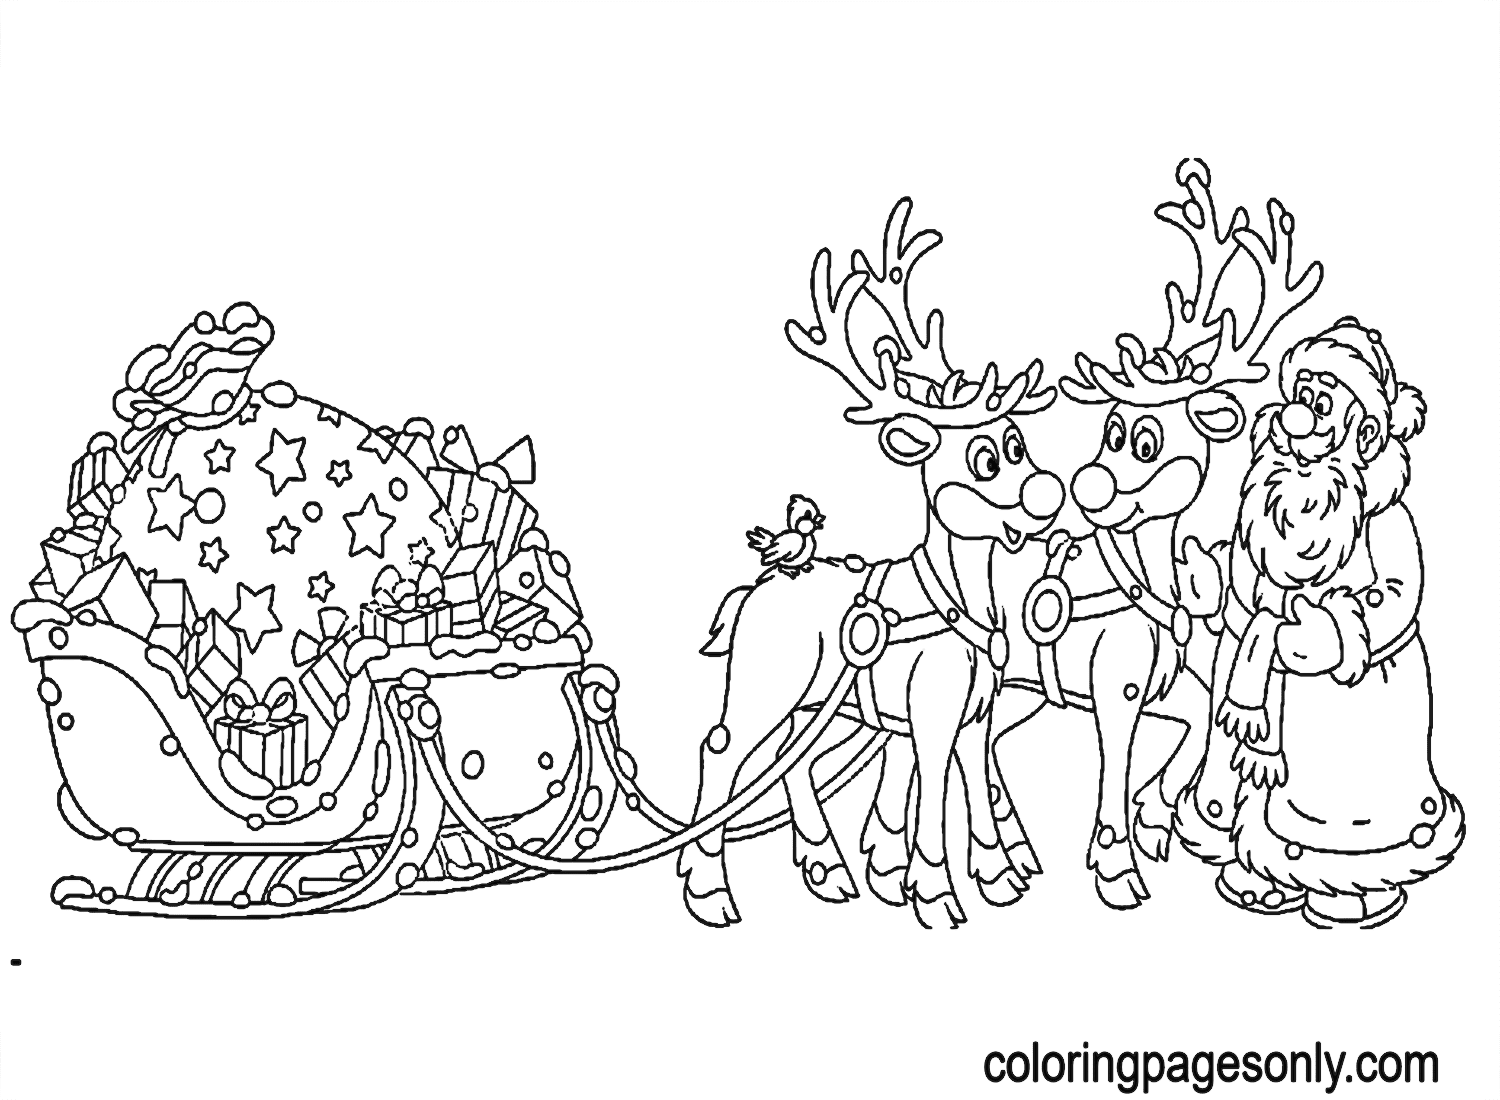 سانتا كلوز مع الرنة، مزلقة وحقيبة كبيرة من الهدايا من الرنة